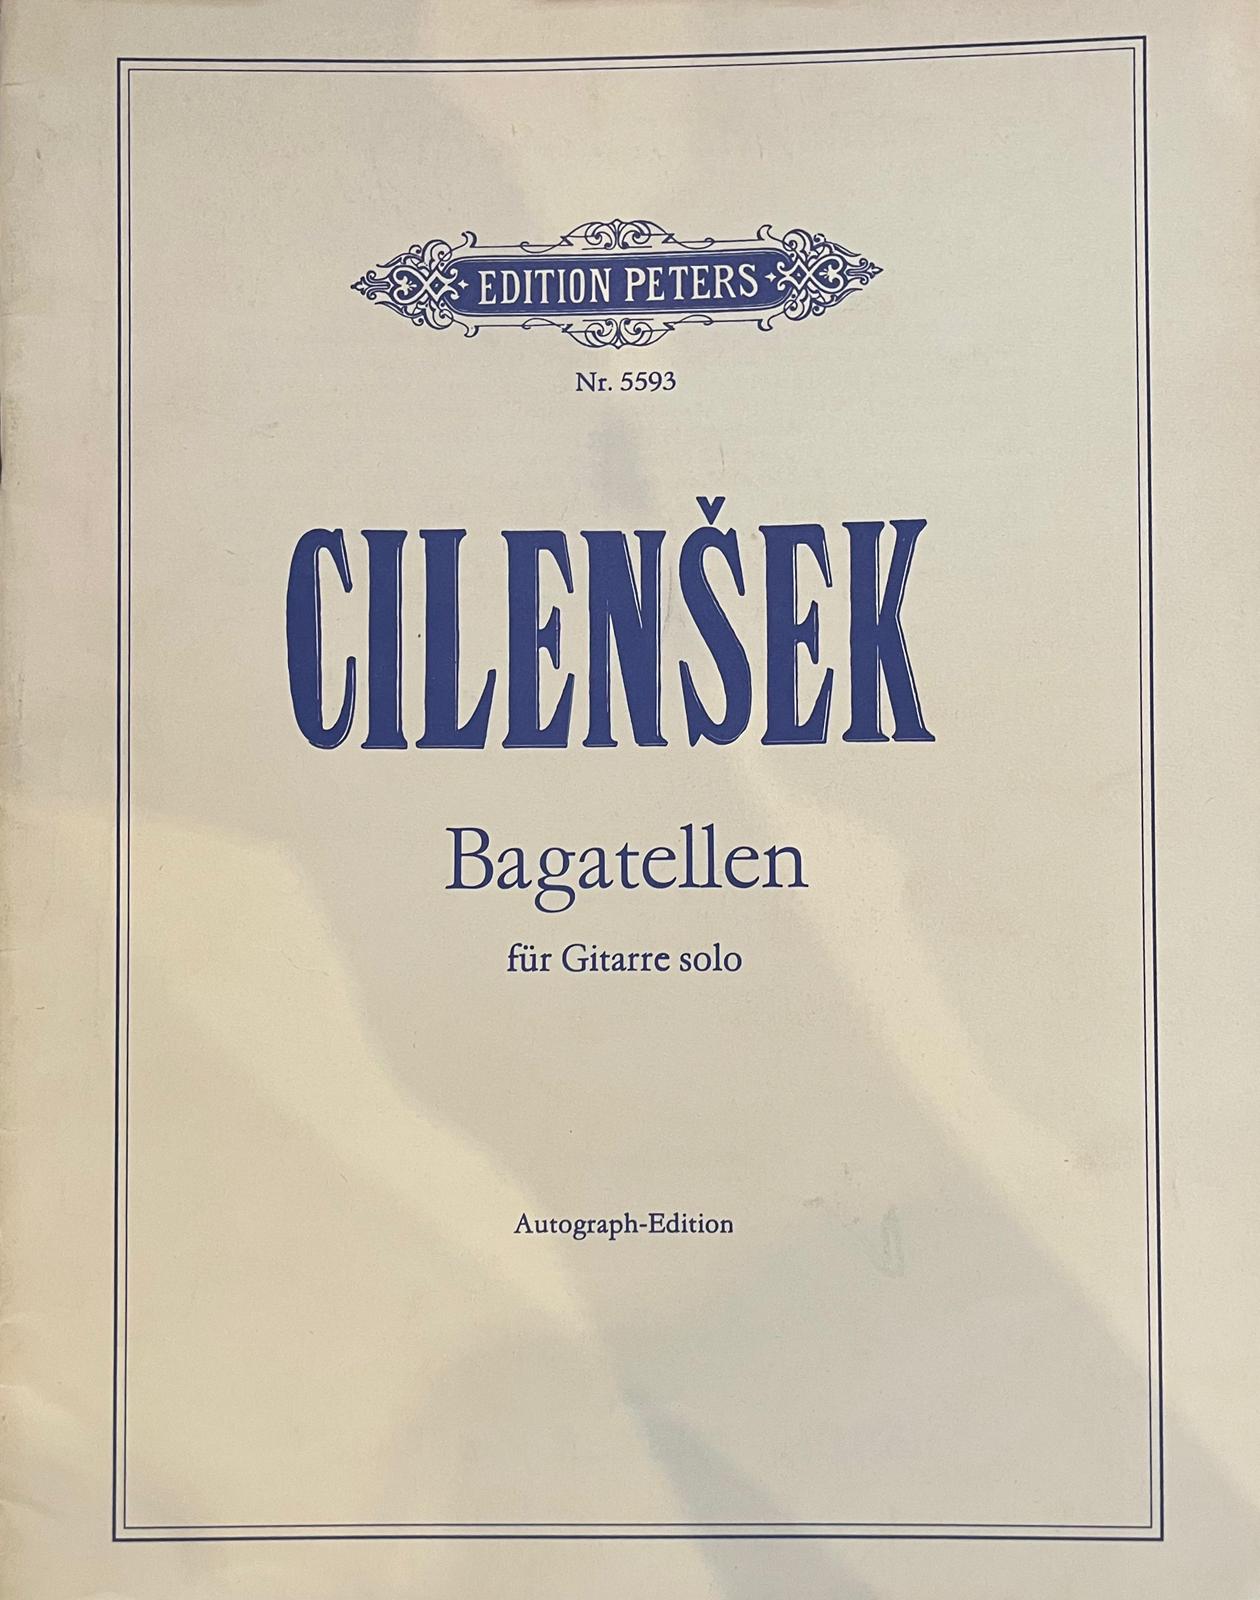 Cilensek Bagatella (Gitarre)